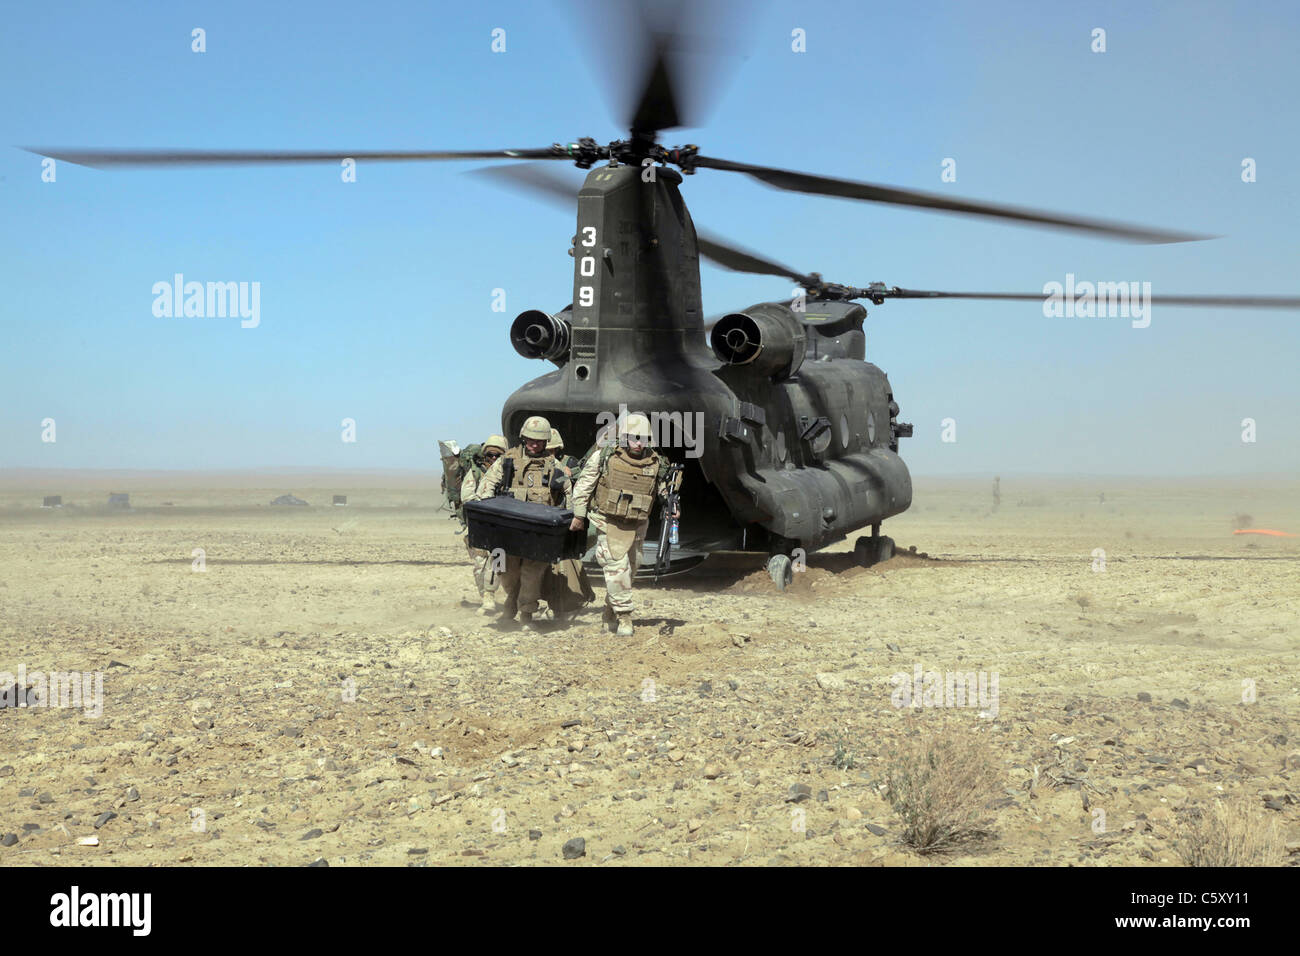 Navy SEABEES partent d'un hélicoptère CH-47 Chinook dans le district de Shorabak, province de Kandahar, Afghanistan. Banque D'Images